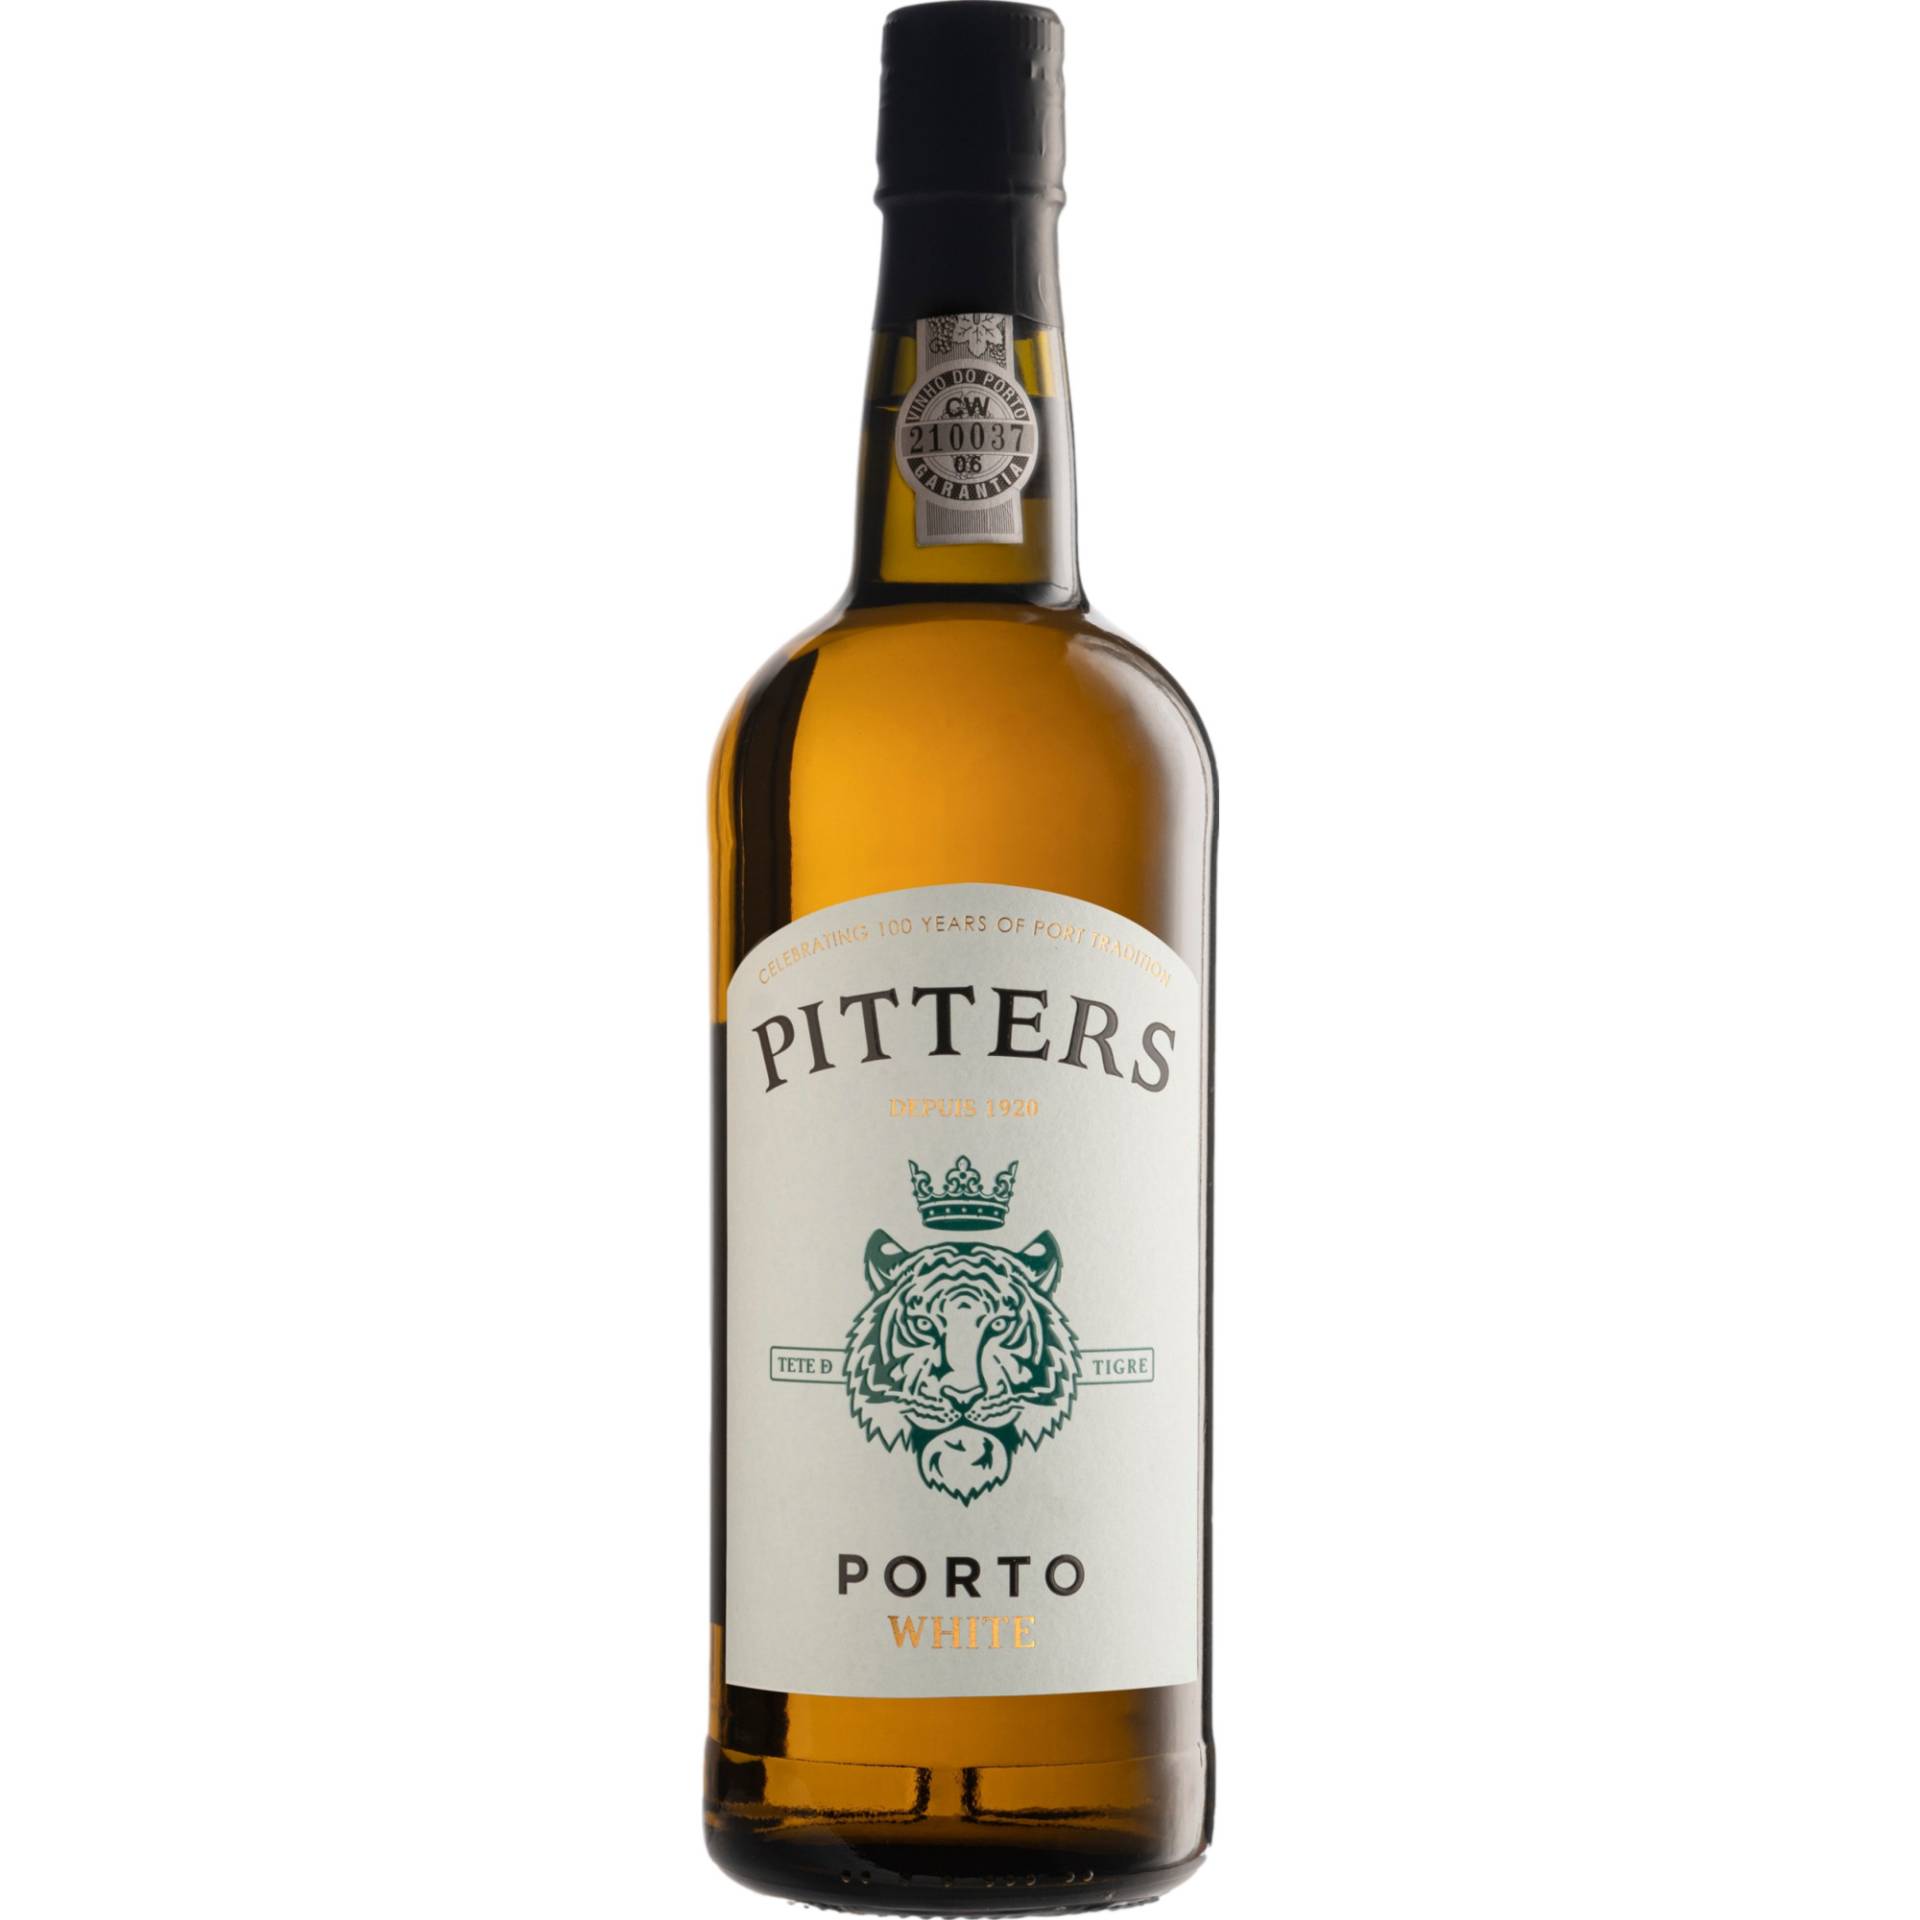 Pitters White Port, Vinho do Porto DOC, 0,75 L, 19% Vol., Douro, Spirituosen von Quinta and Vineyard Bottlers Vinhos SA,Rua Do Choupelo, 250, 4400-088, V. N. Gaia